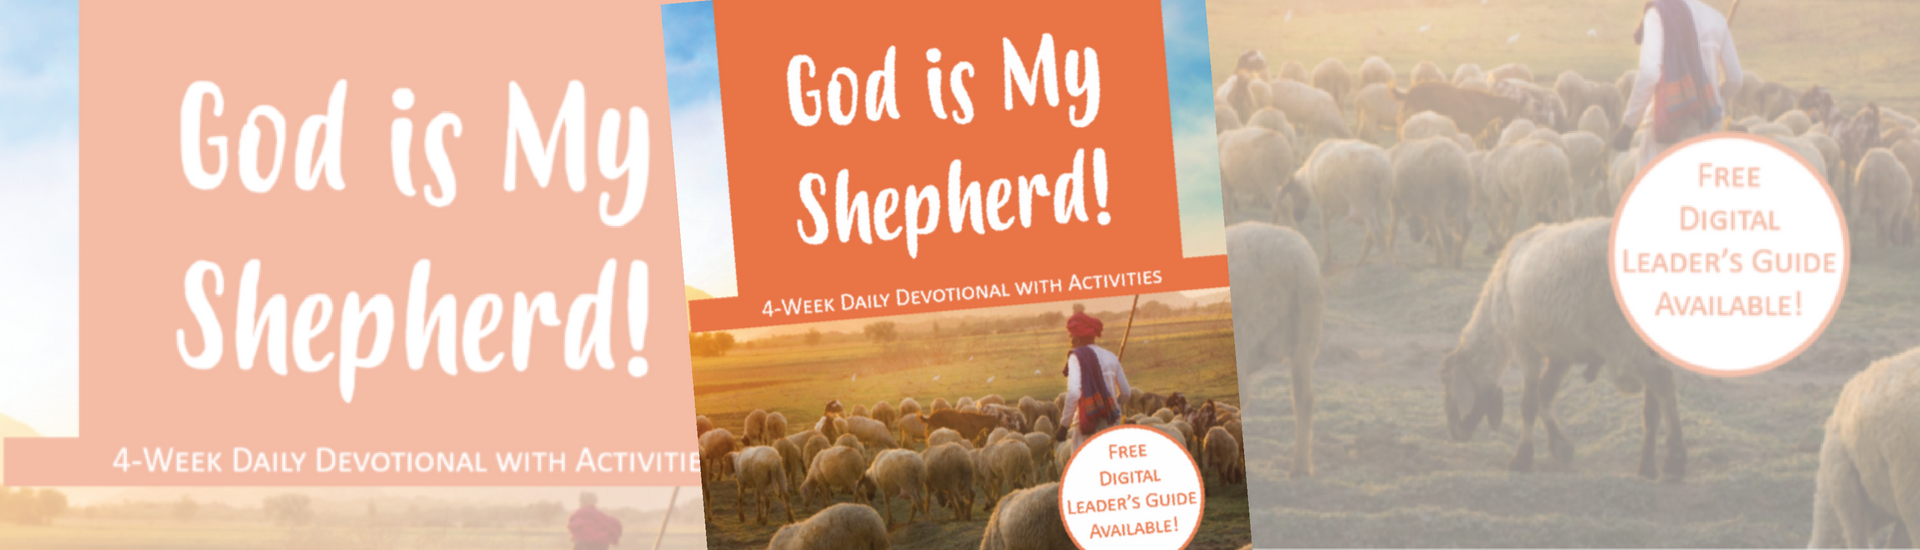 God is My Shepherd Devotional Book